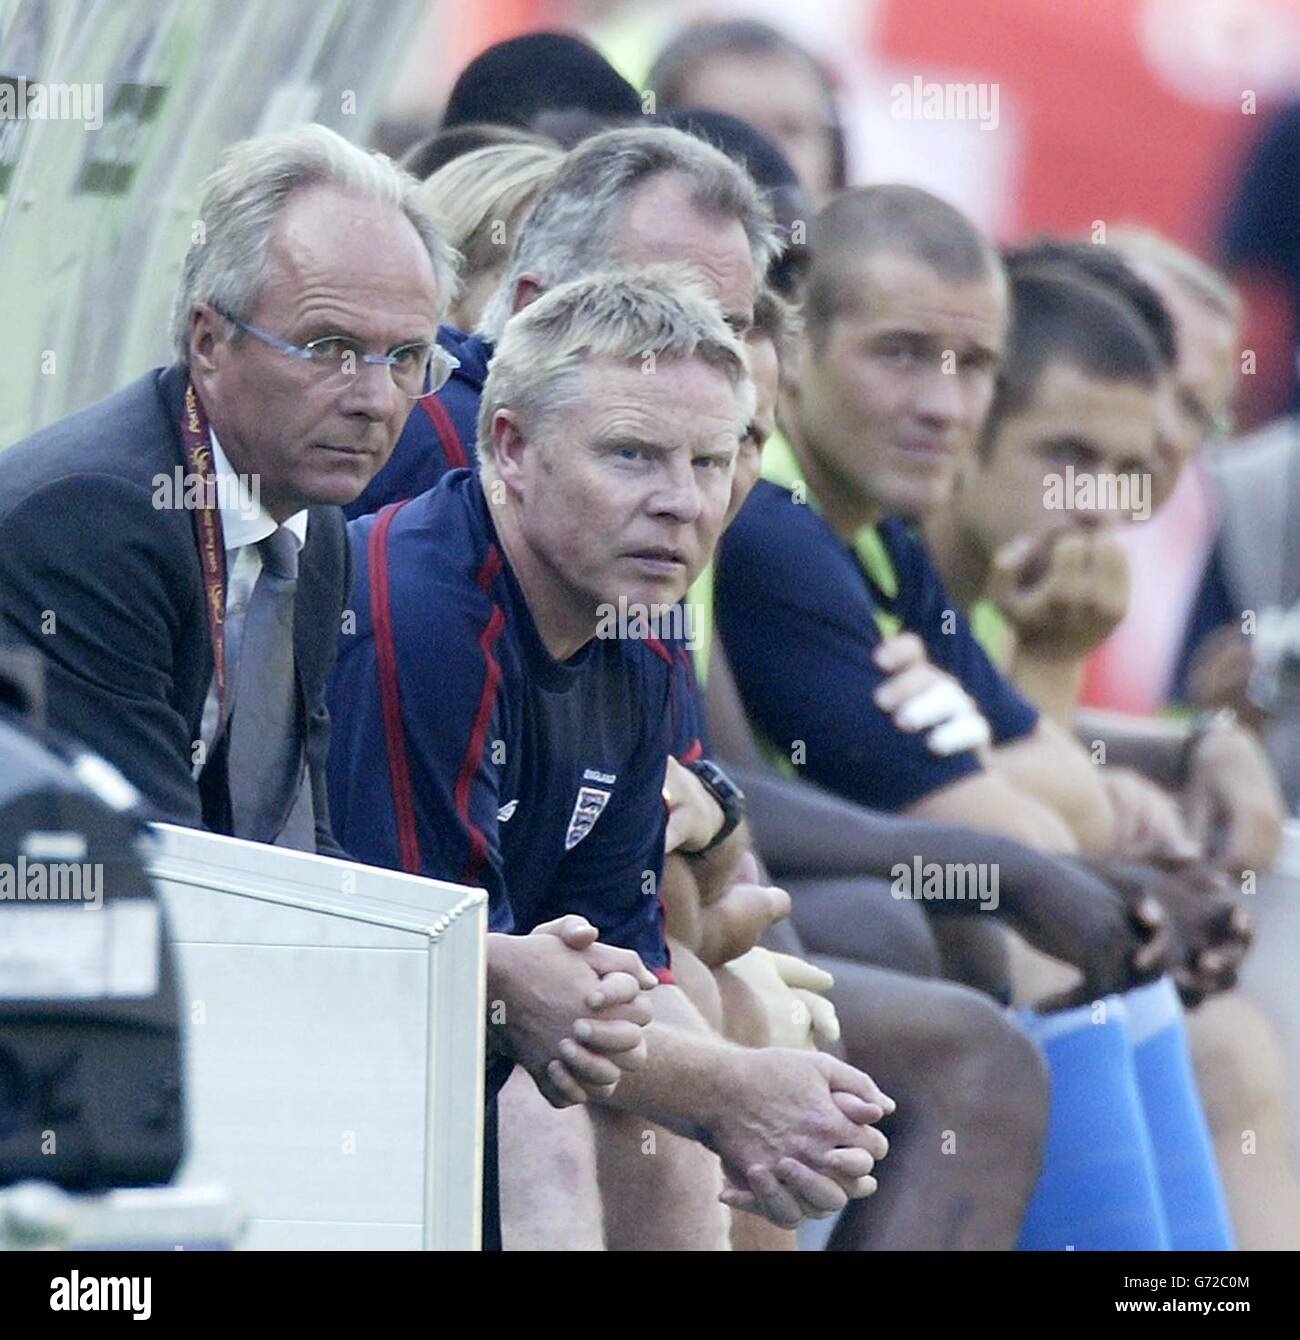 El entrenador de Inglaterra, Sven Goran Eriksson (a la izquierda), observa desde el excavado junto a los jugadores y el personal durante la Eurocopa 2004, primera ronda, partido del Grupo B contra Suiza en la Cidade de Coimbra, Portugal. Foto de stock